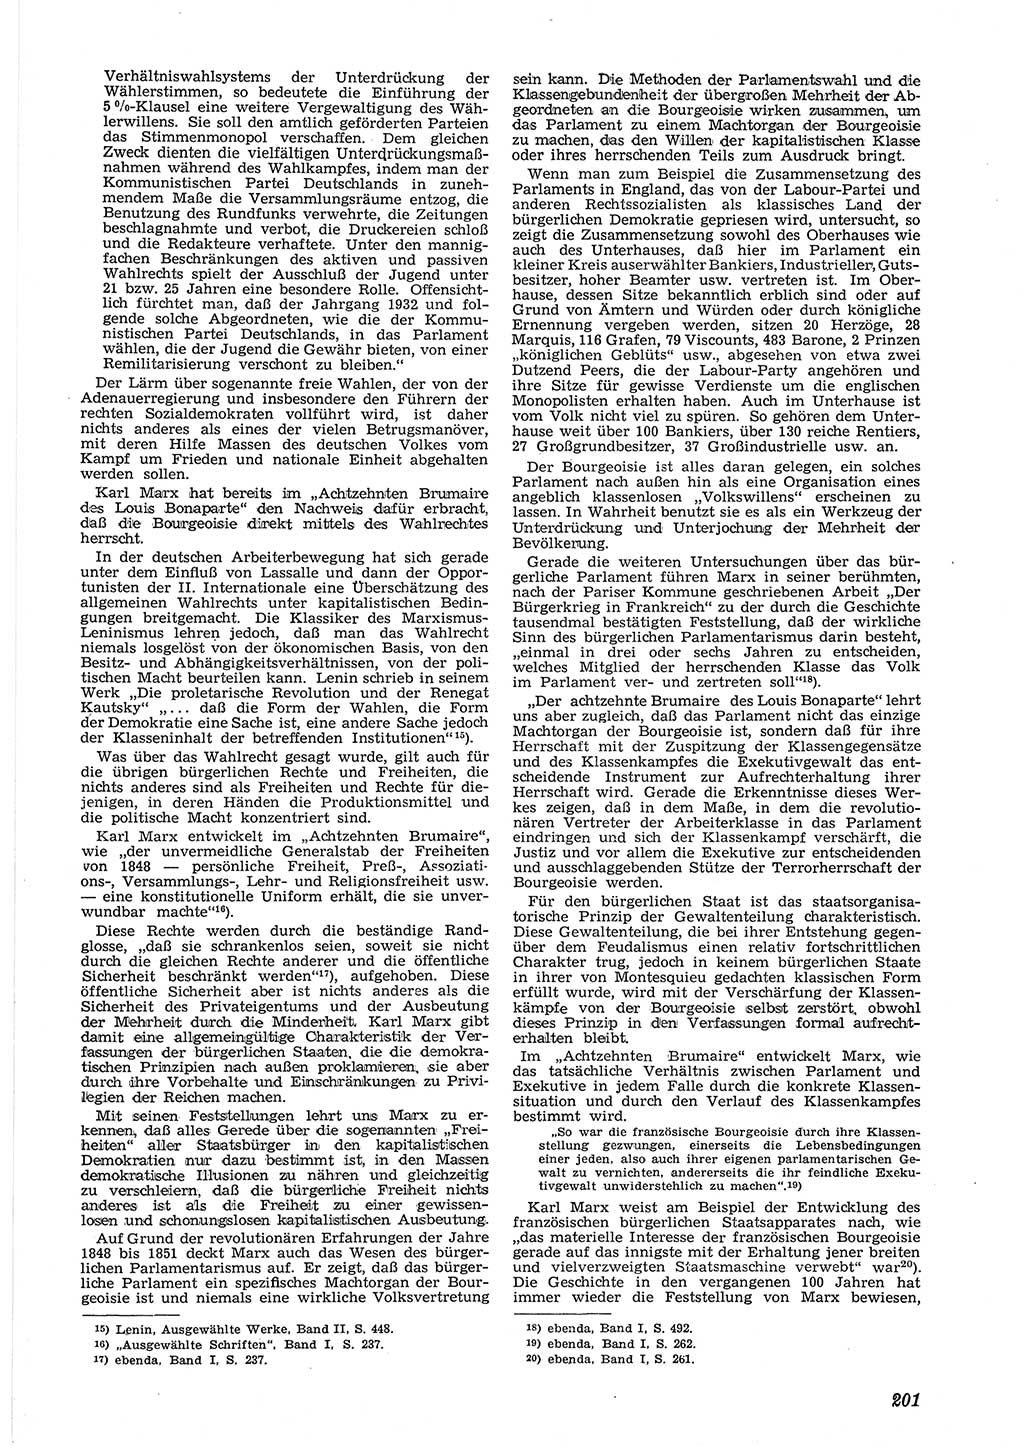 Neue Justiz (NJ), Zeitschrift für Recht und Rechtswissenschaft [Deutsche Demokratische Republik (DDR)], 6. Jahrgang 1952, Seite 201 (NJ DDR 1952, S. 201)